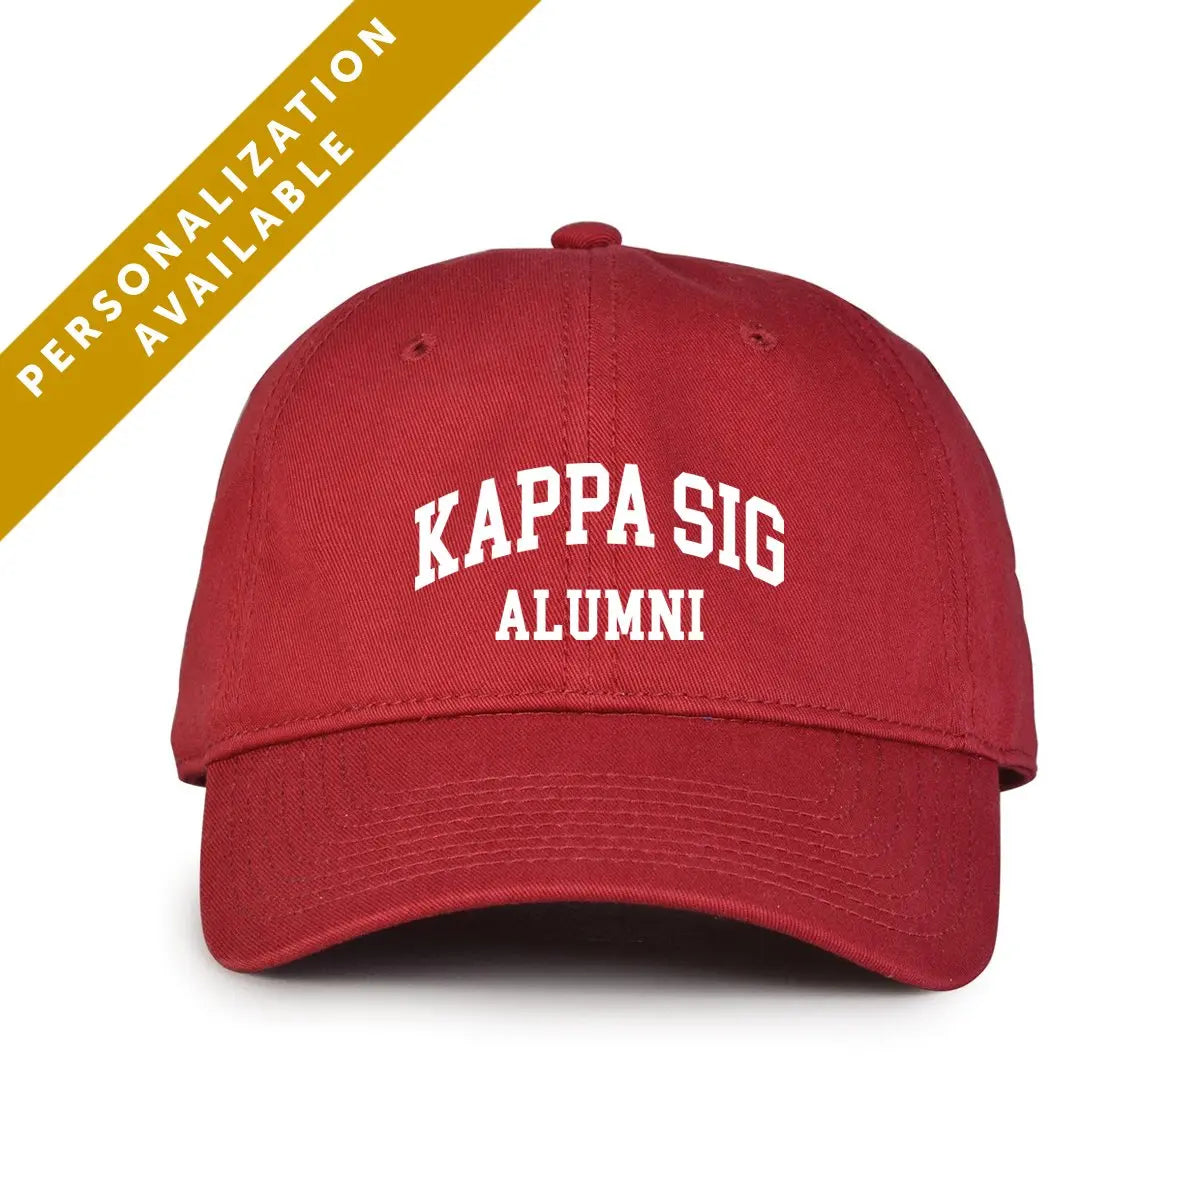 Kappa Sig Alumni Cap